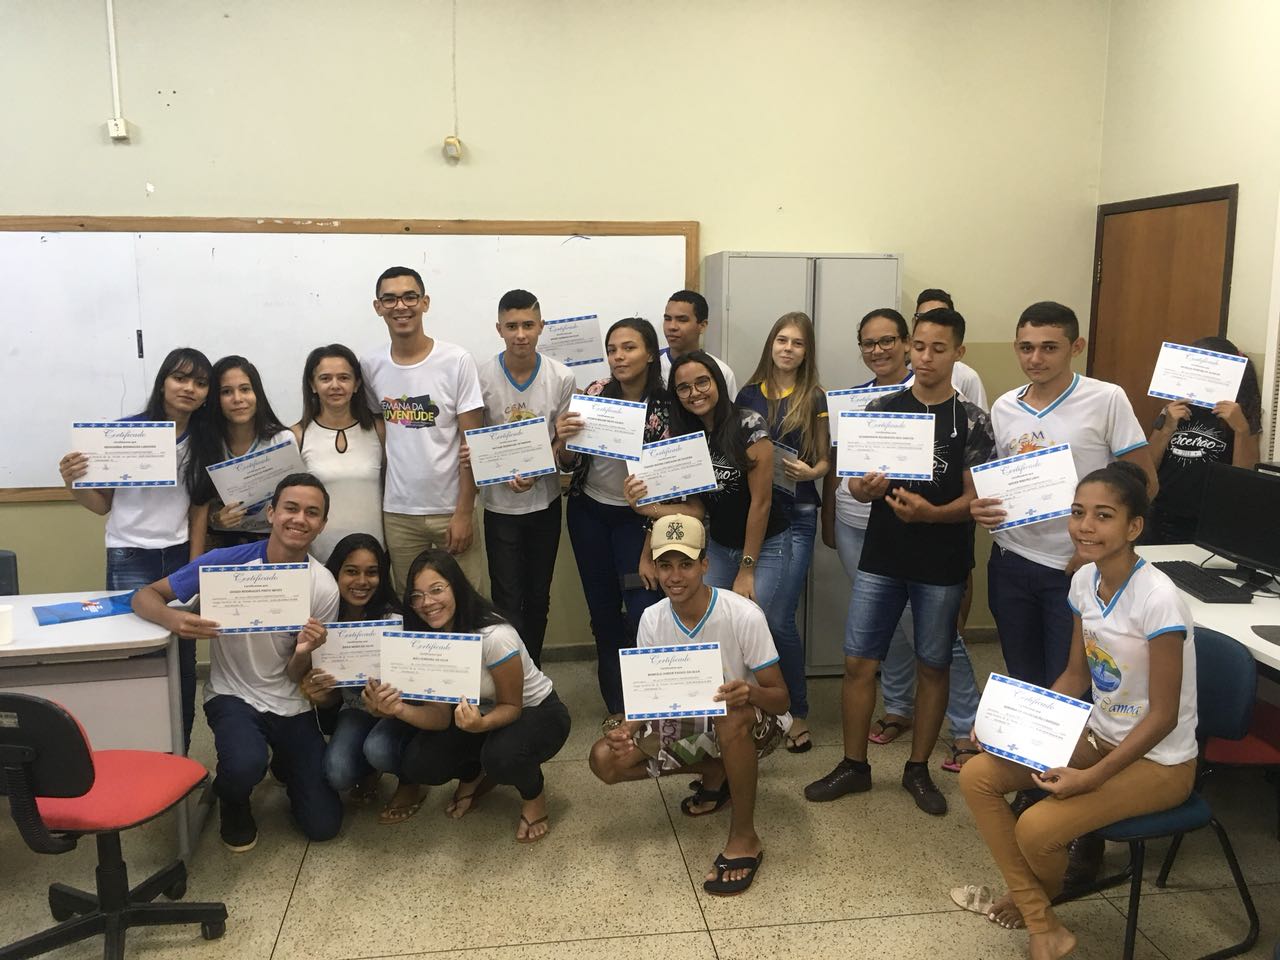 Fundação da Juventude de Porto Nacional entrega certificados de curso em parceria com o Sebrae